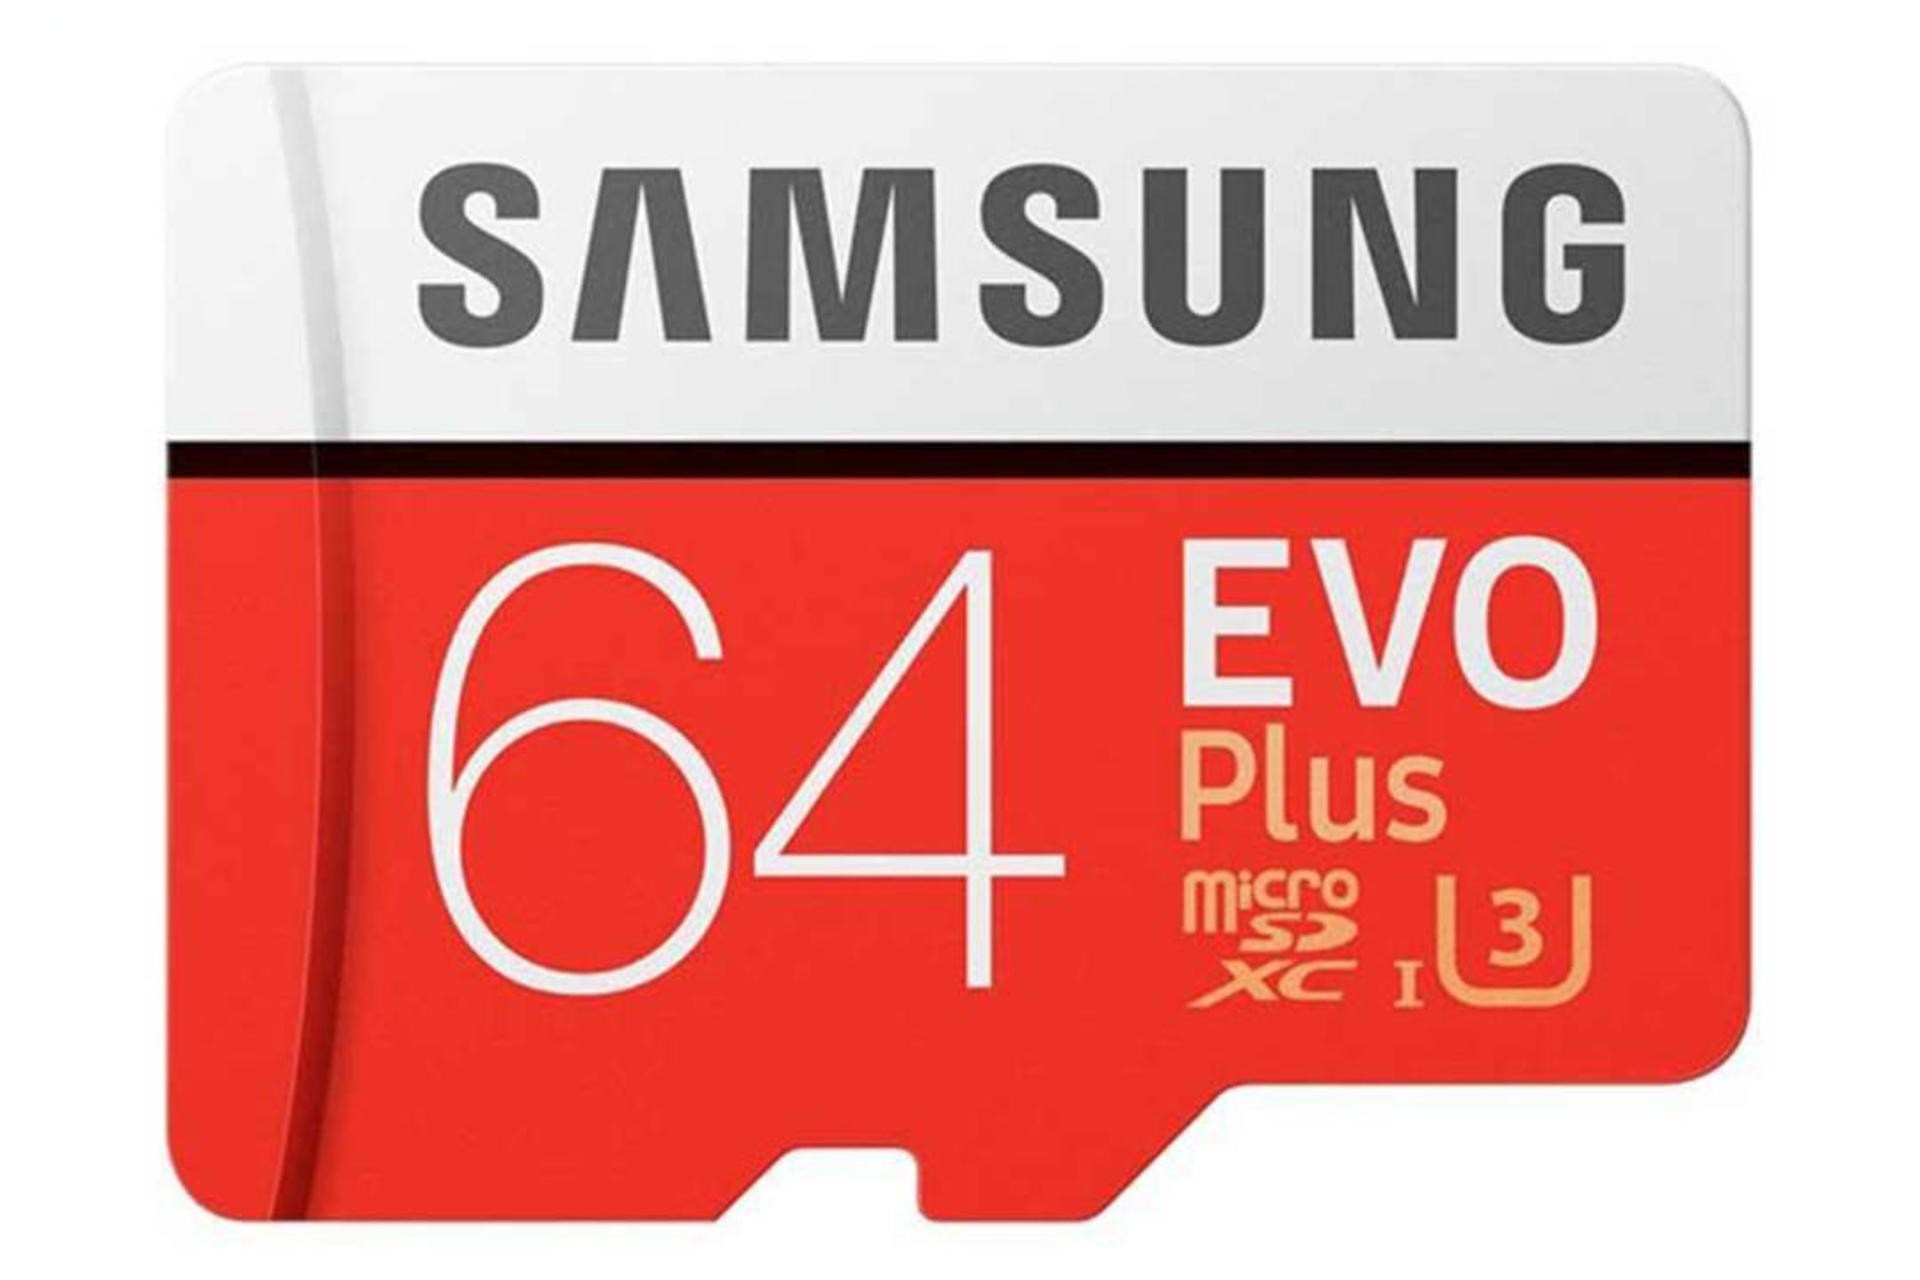 مرجع متخصصين ايران Samsung Evo Plus microSDHC Class 10 UHS-I U1 64GB